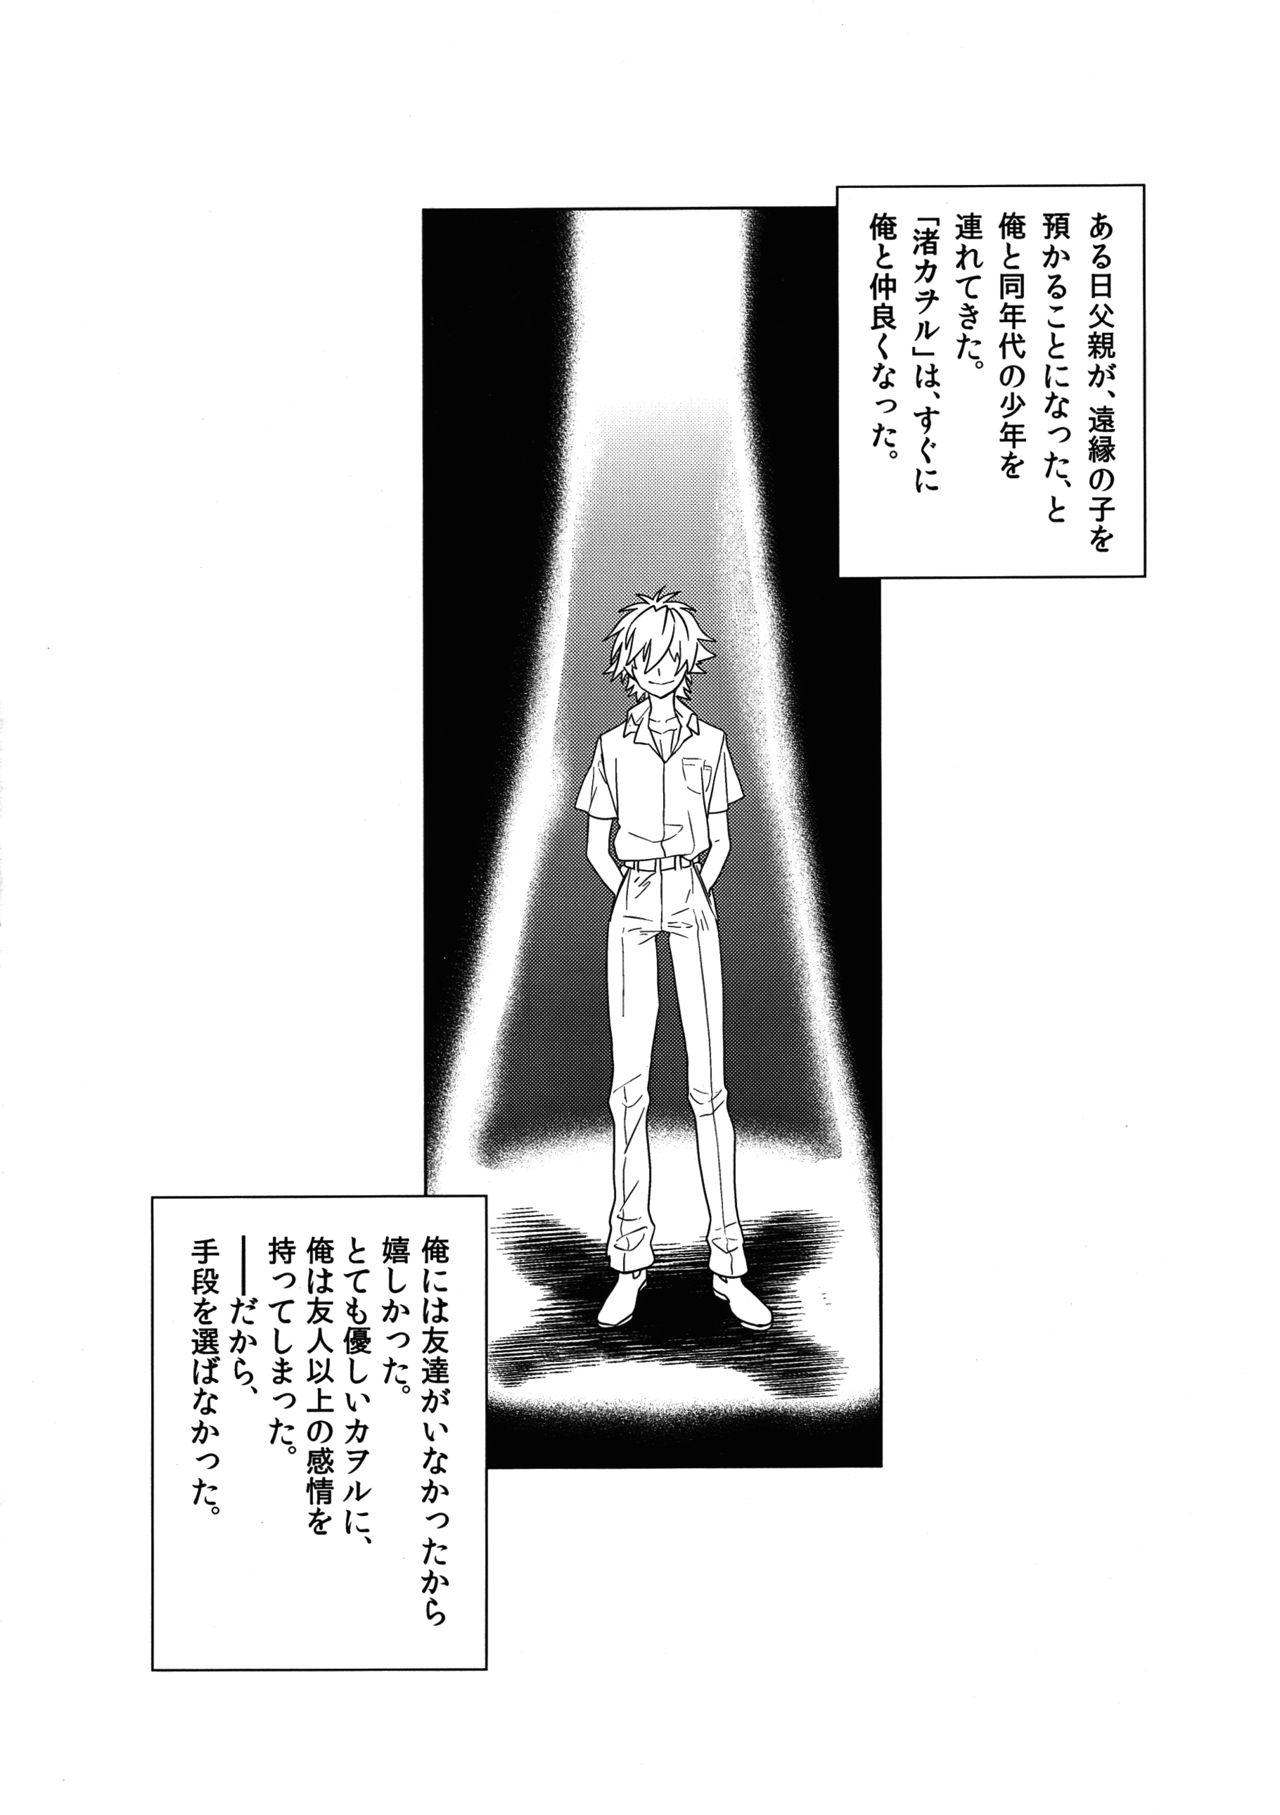 Handjobs Ore no Koto o Ikari Shinji da to Omoikomu Saimin ni Kakatta Nagisa Kaworu-kun wa Mechamecha Yasashii - Neon genesis evangelion Gag - Page 2